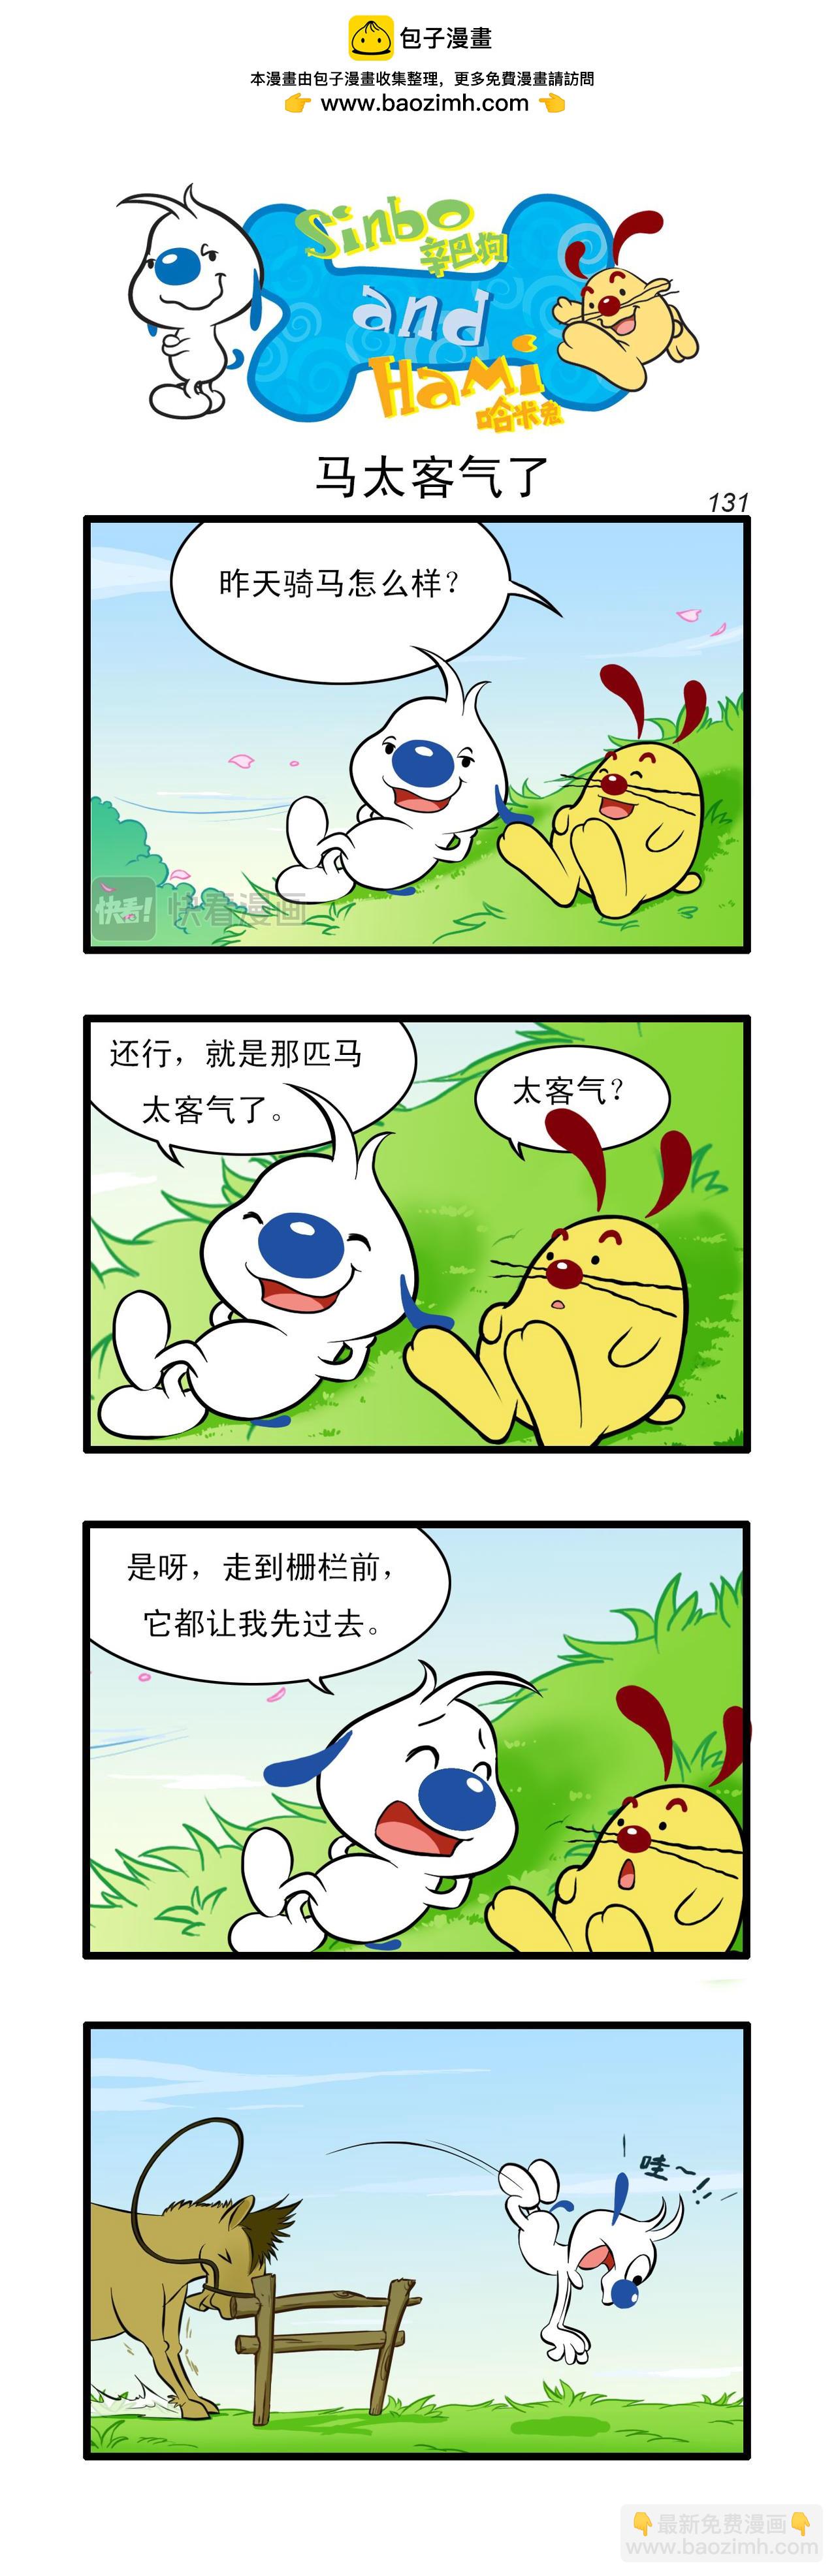 辛巴狗日常漫畫 - 多格39 - 1